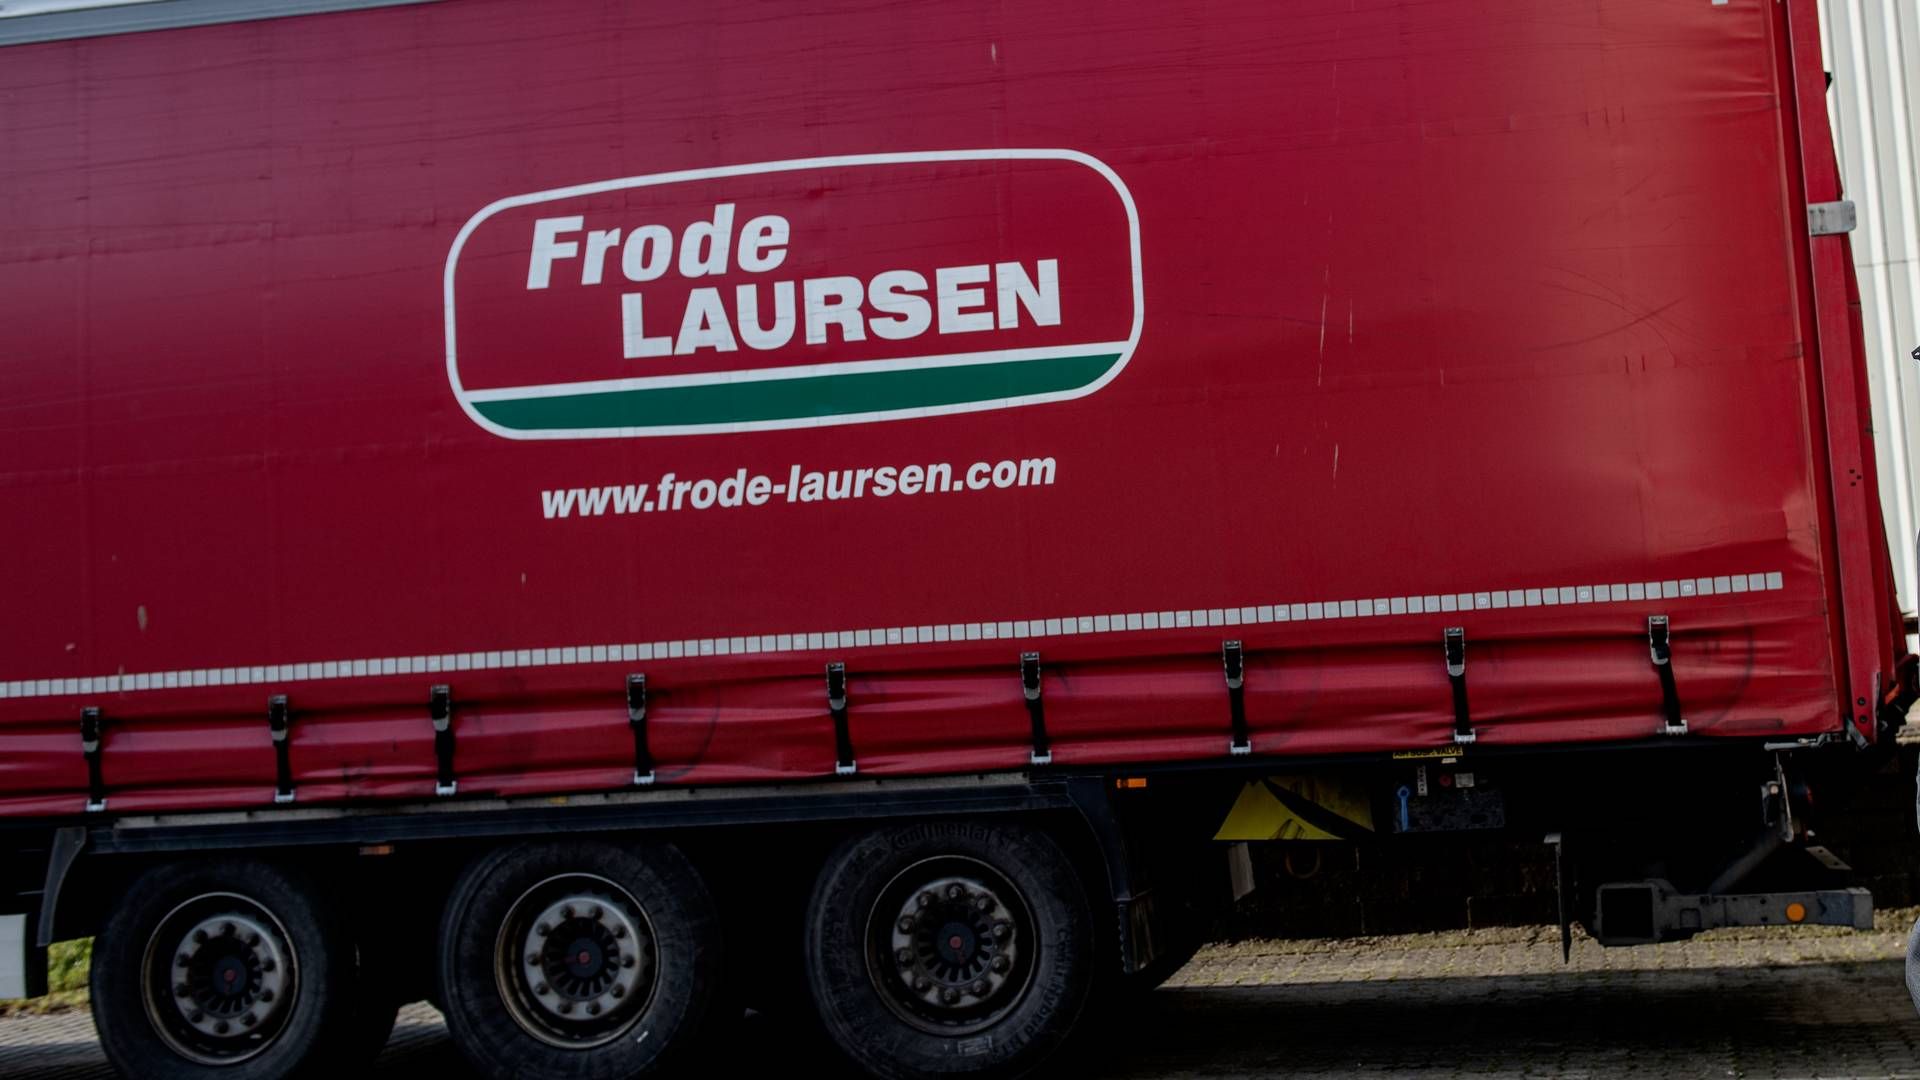 Vognmandsfirmaet Frode Laursen blev stiftet i Vitten i Østjylland, og her har milliardkoncernen fortsat hovedkvarter. | Foto: Casper Dalhoff